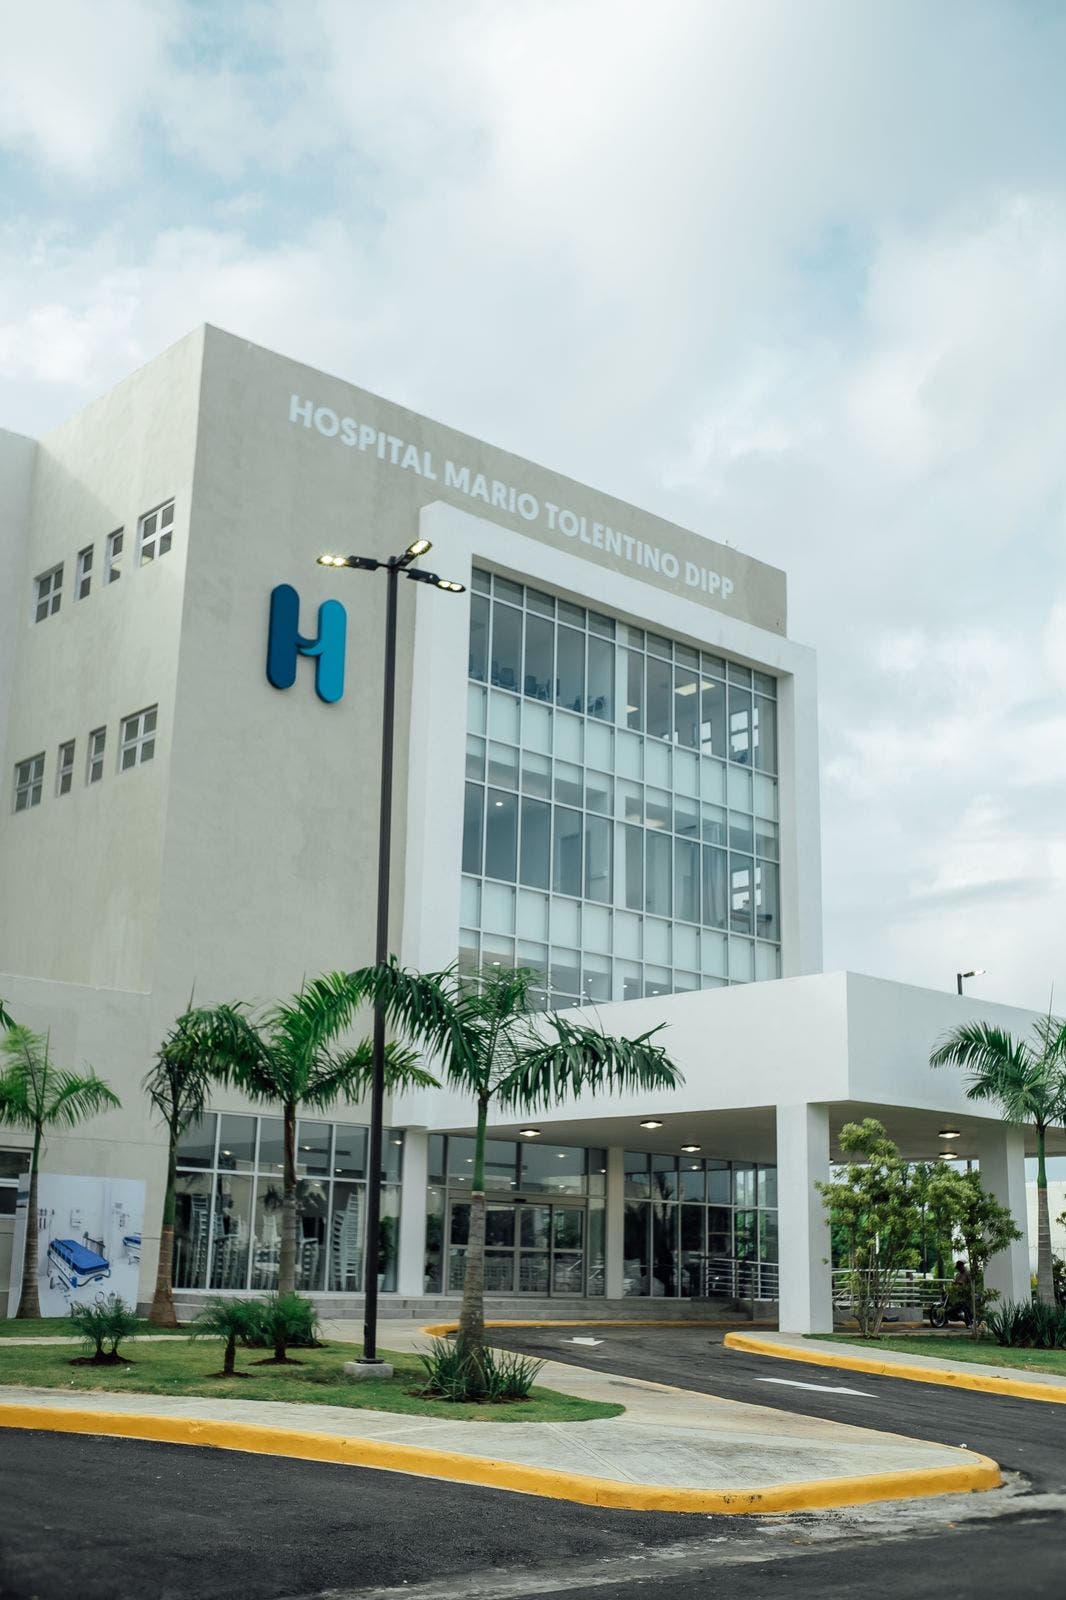 Hospital Dr. Mario Tolentino Dipp en SDN comenzará a ofrecer sus servicios el 28 de agosto